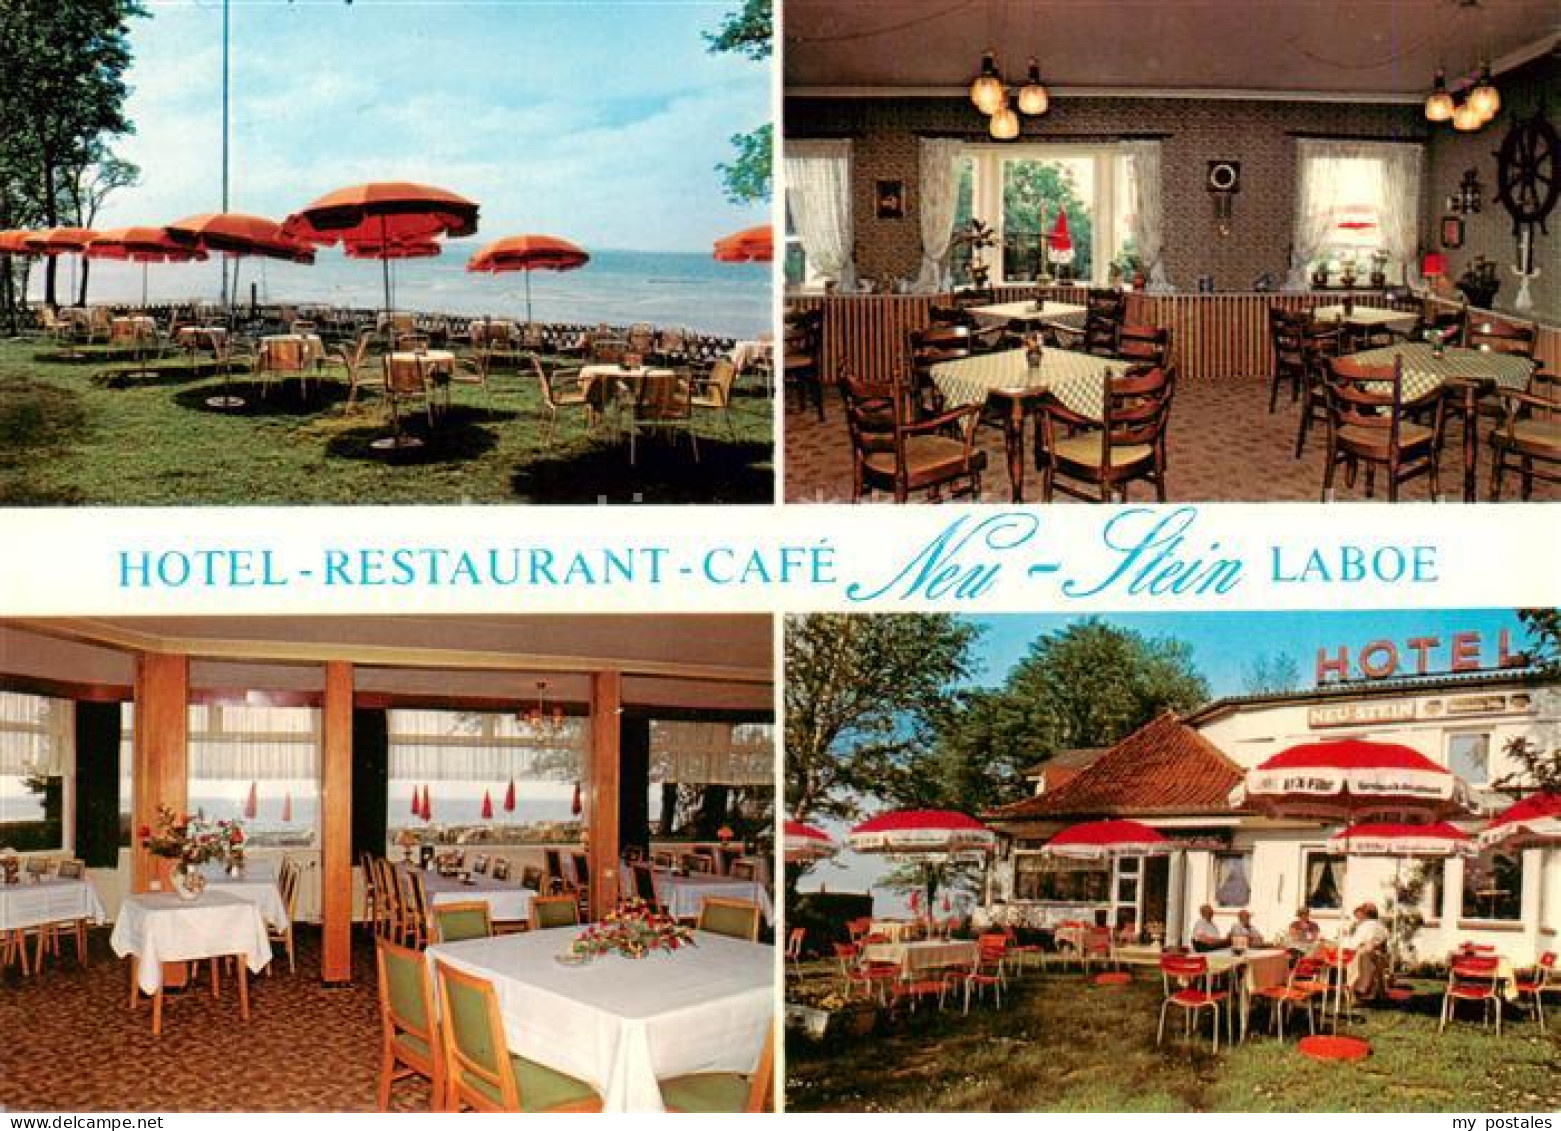 73849402 Laboe Hotel Restaurant Cafe Neu-Stein Laboe - Laboe